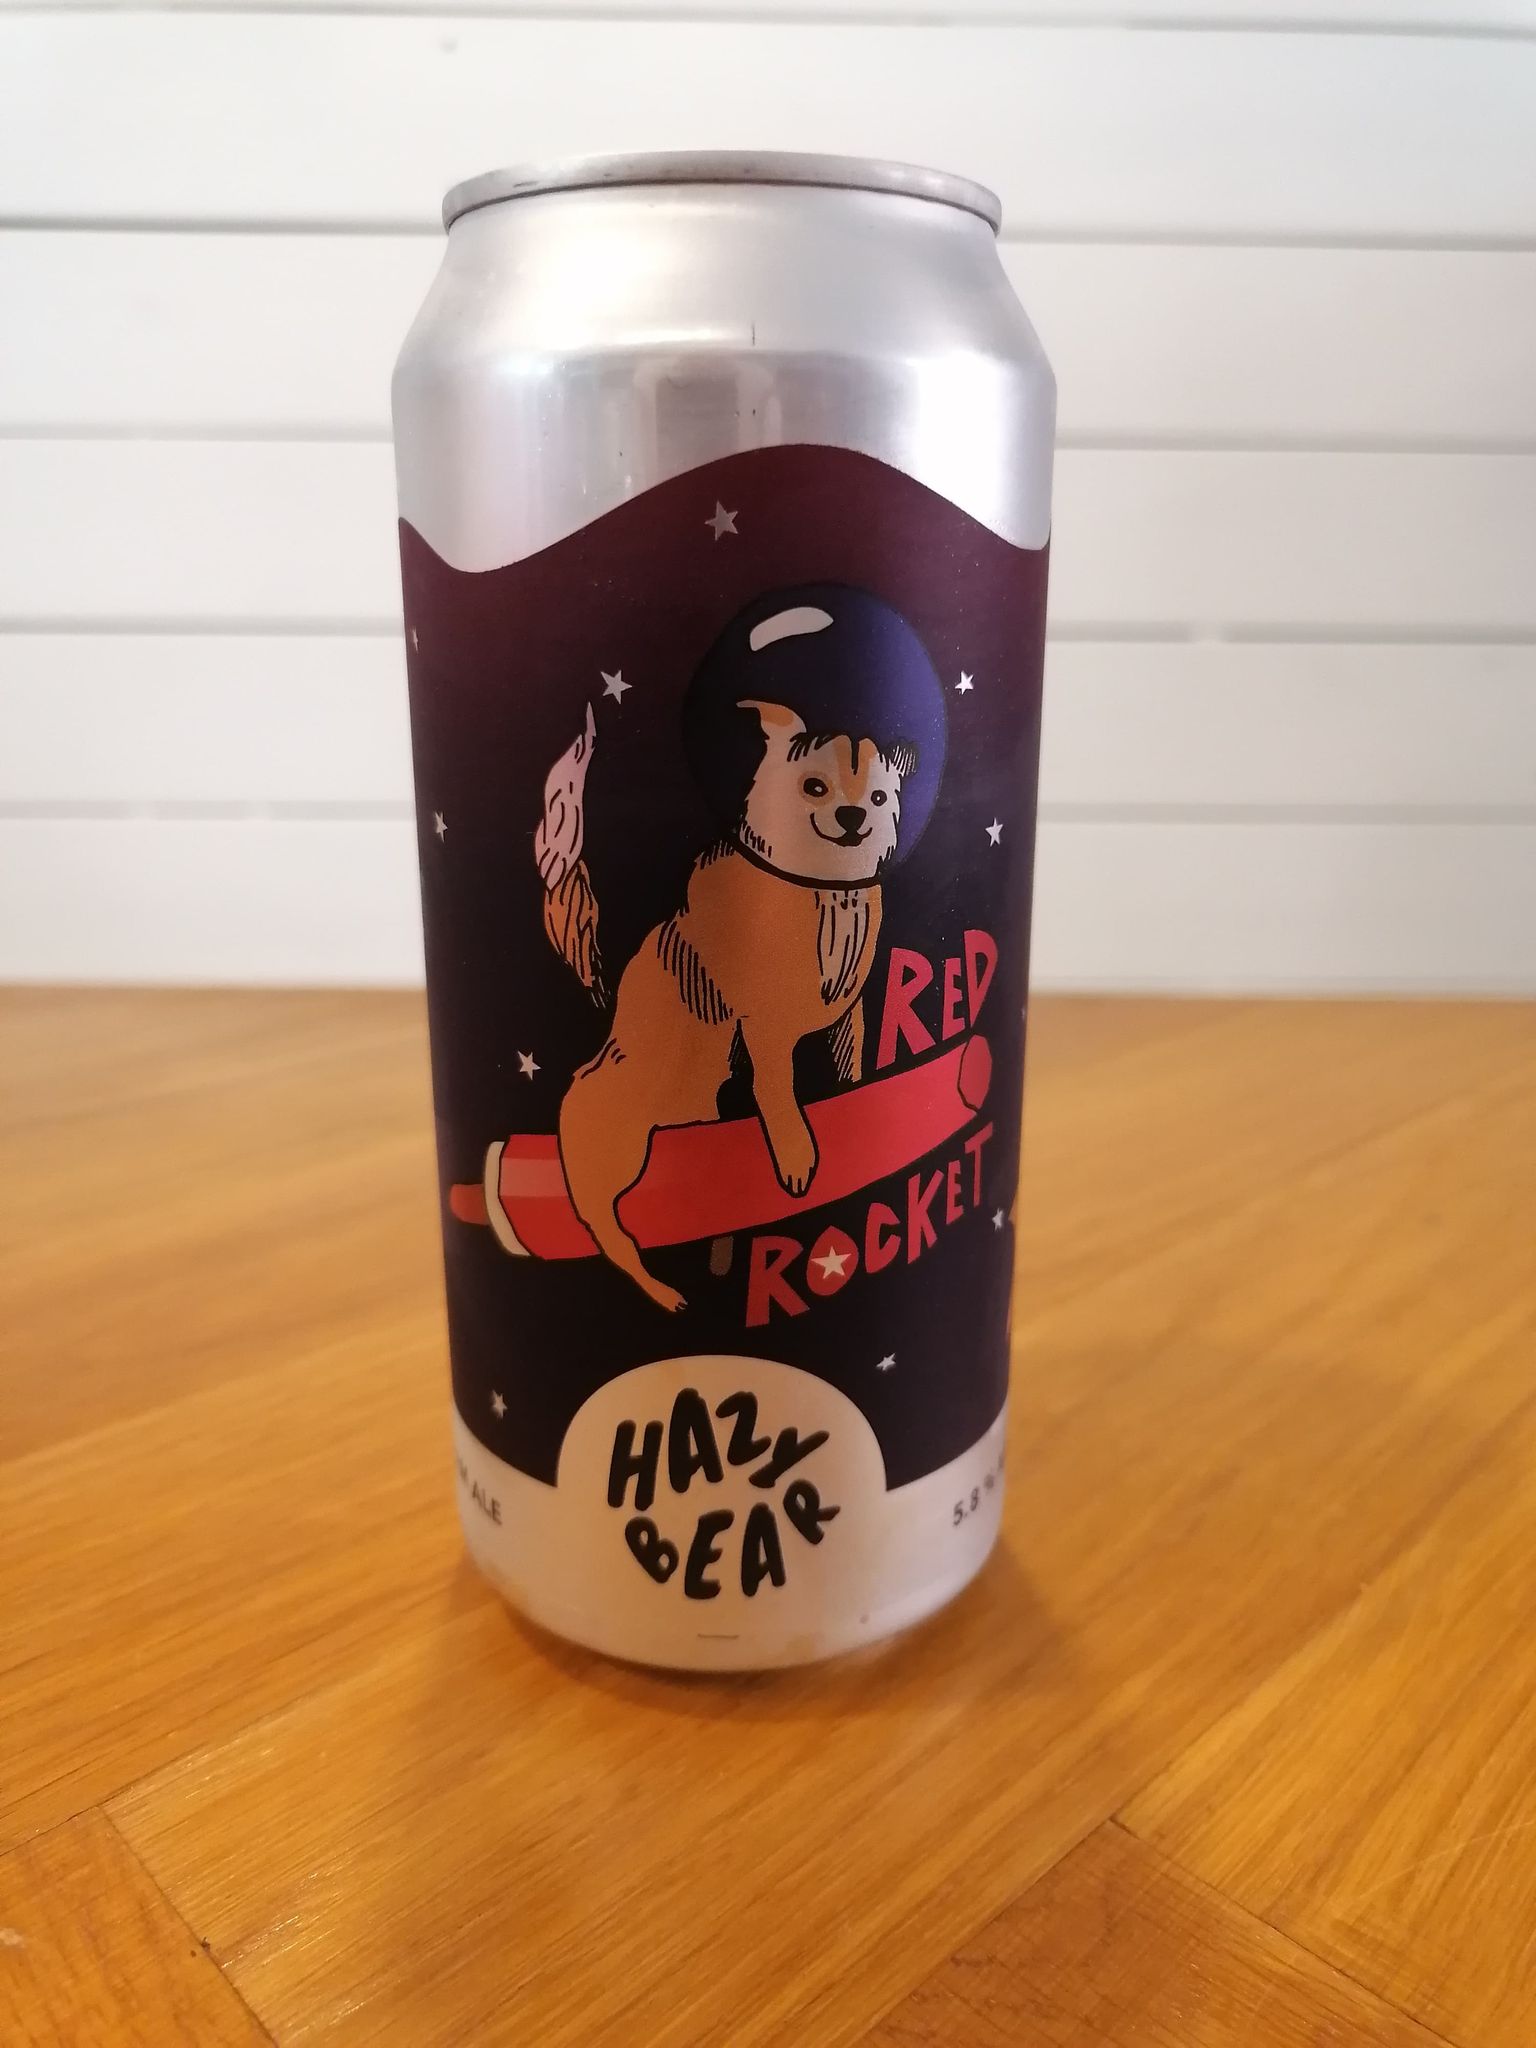 Billede af Red Rocket (Cream ale / 5,8% / 44cl) - Hazy bear